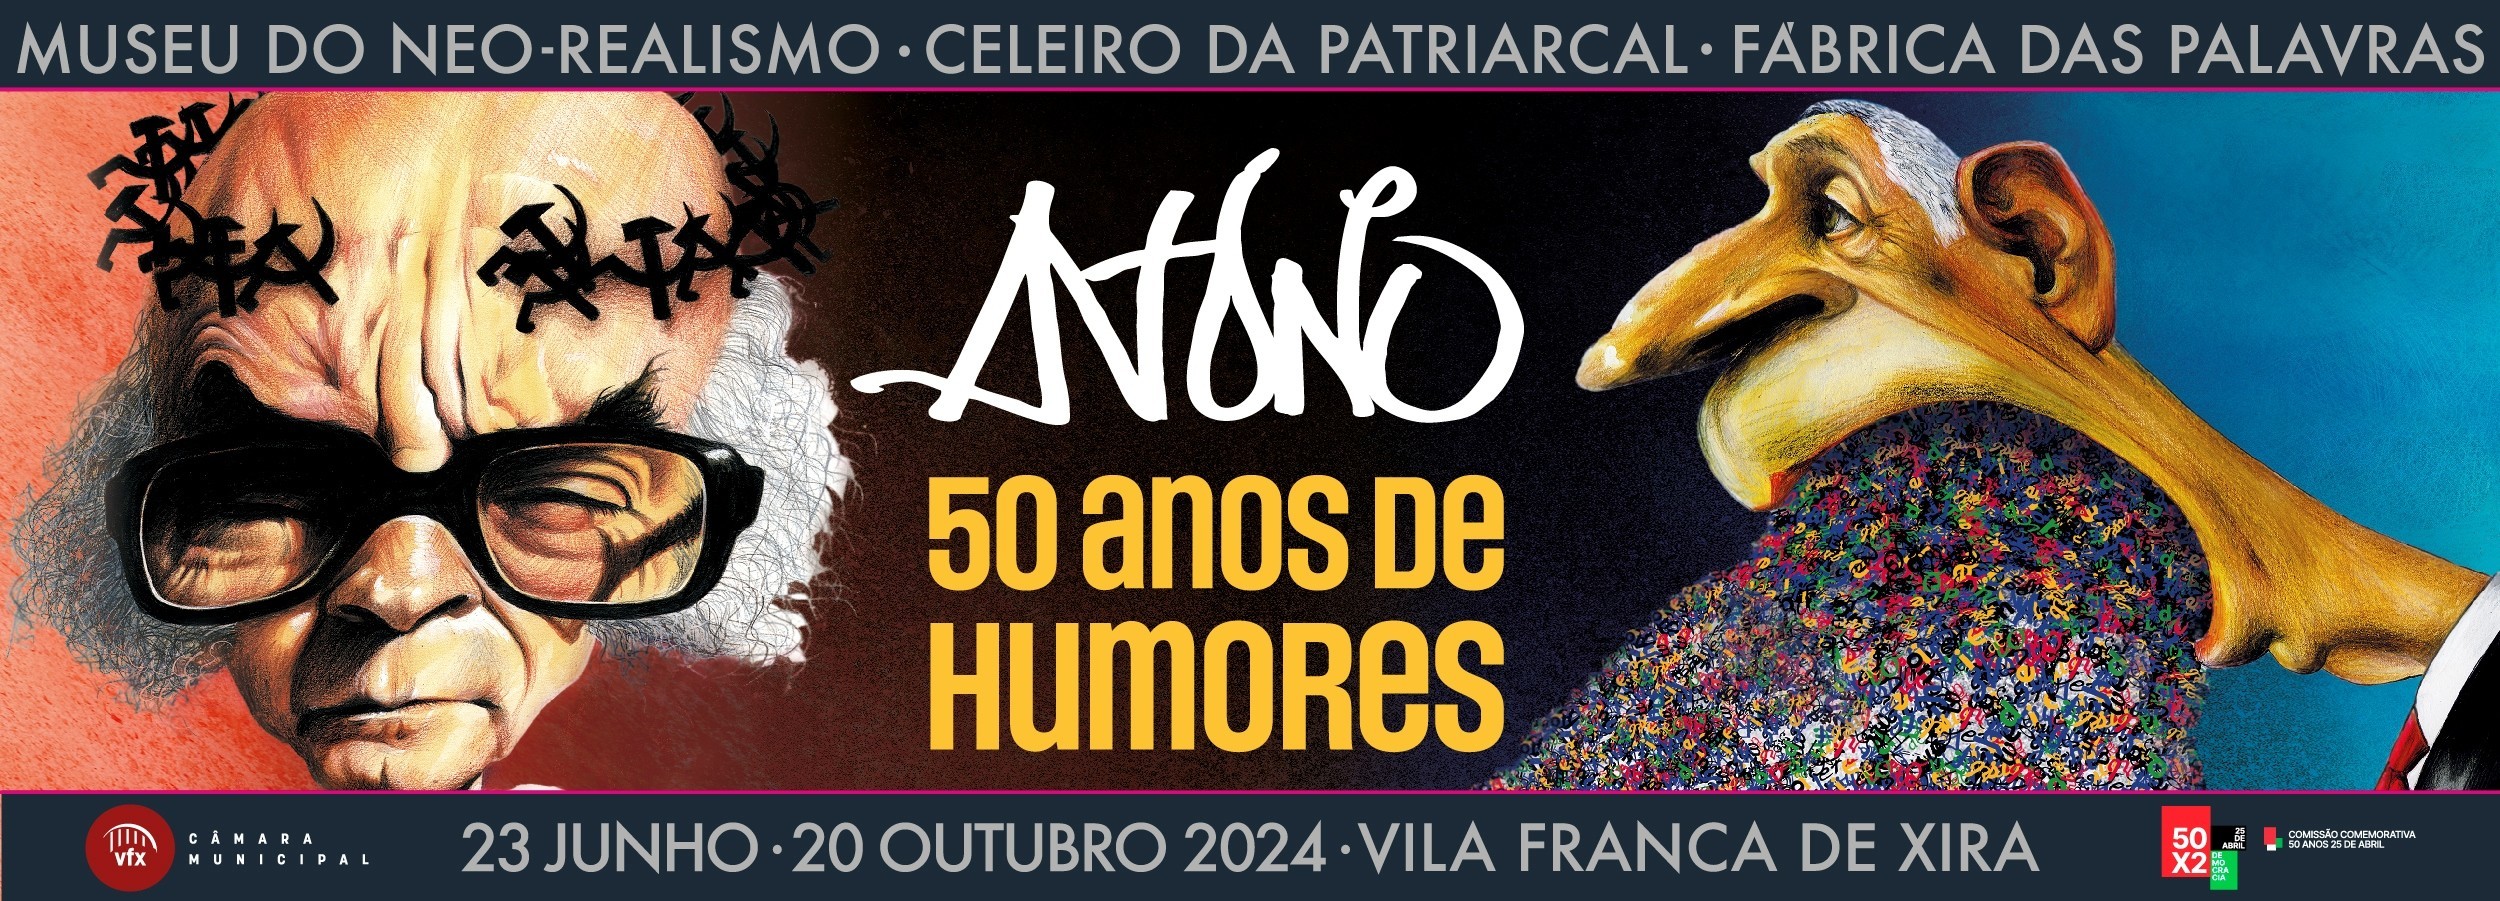 Exposição "António: 50 Anos de Humores" apresenta legado de António Antunes